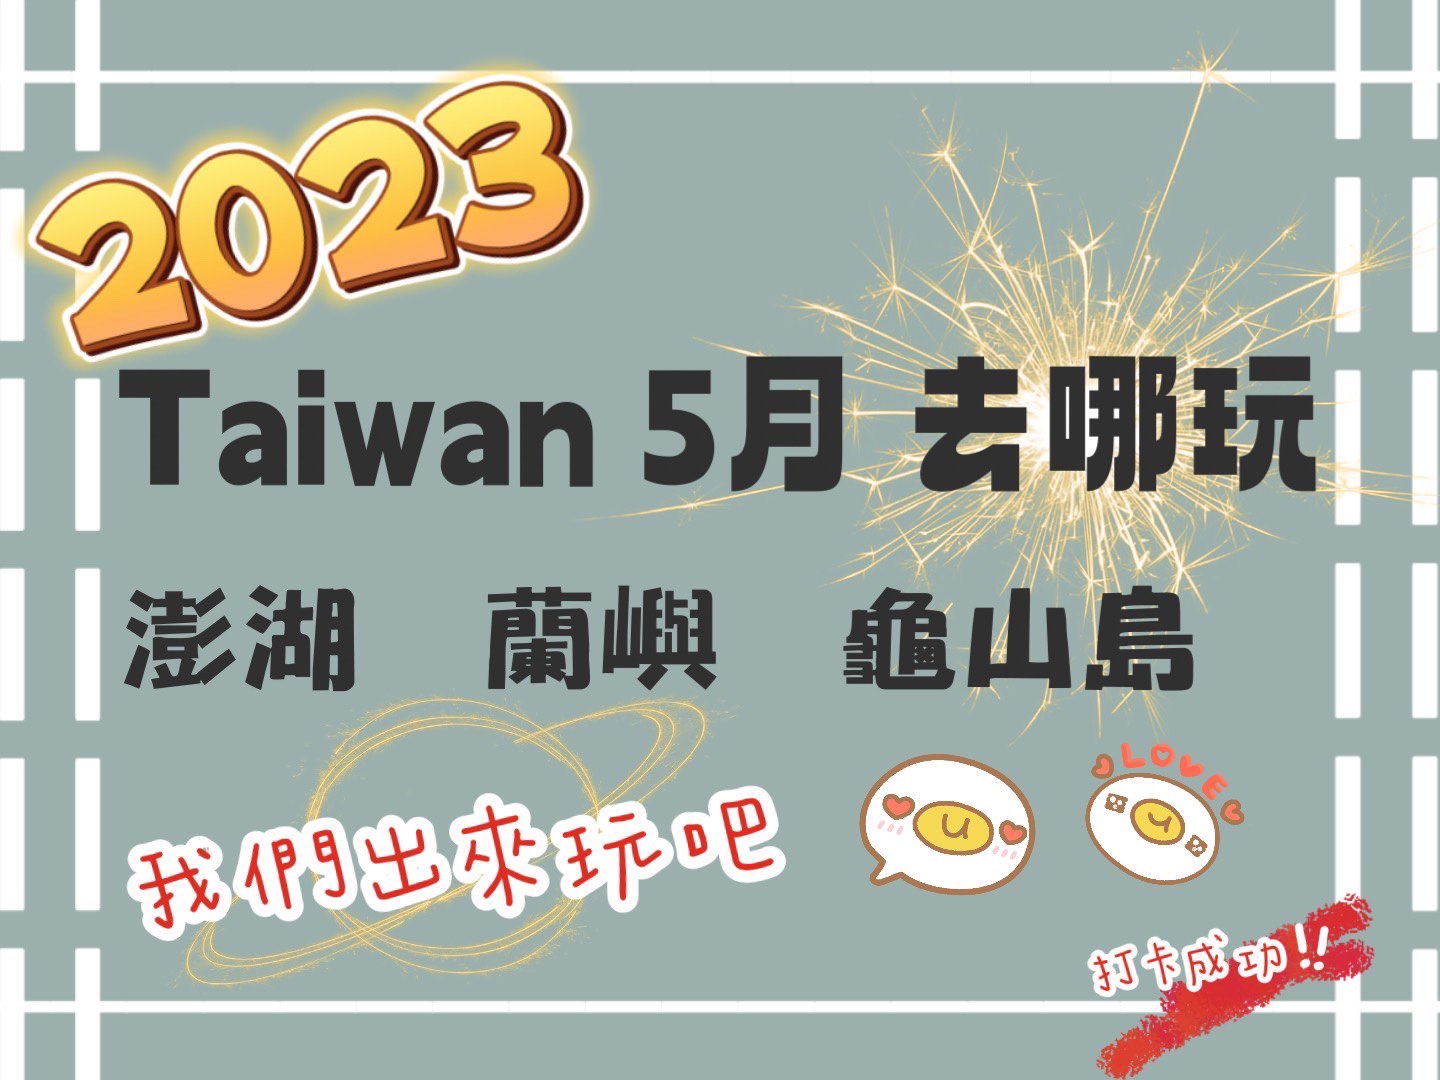 2023台灣5月旅遊活動 全台活動整理